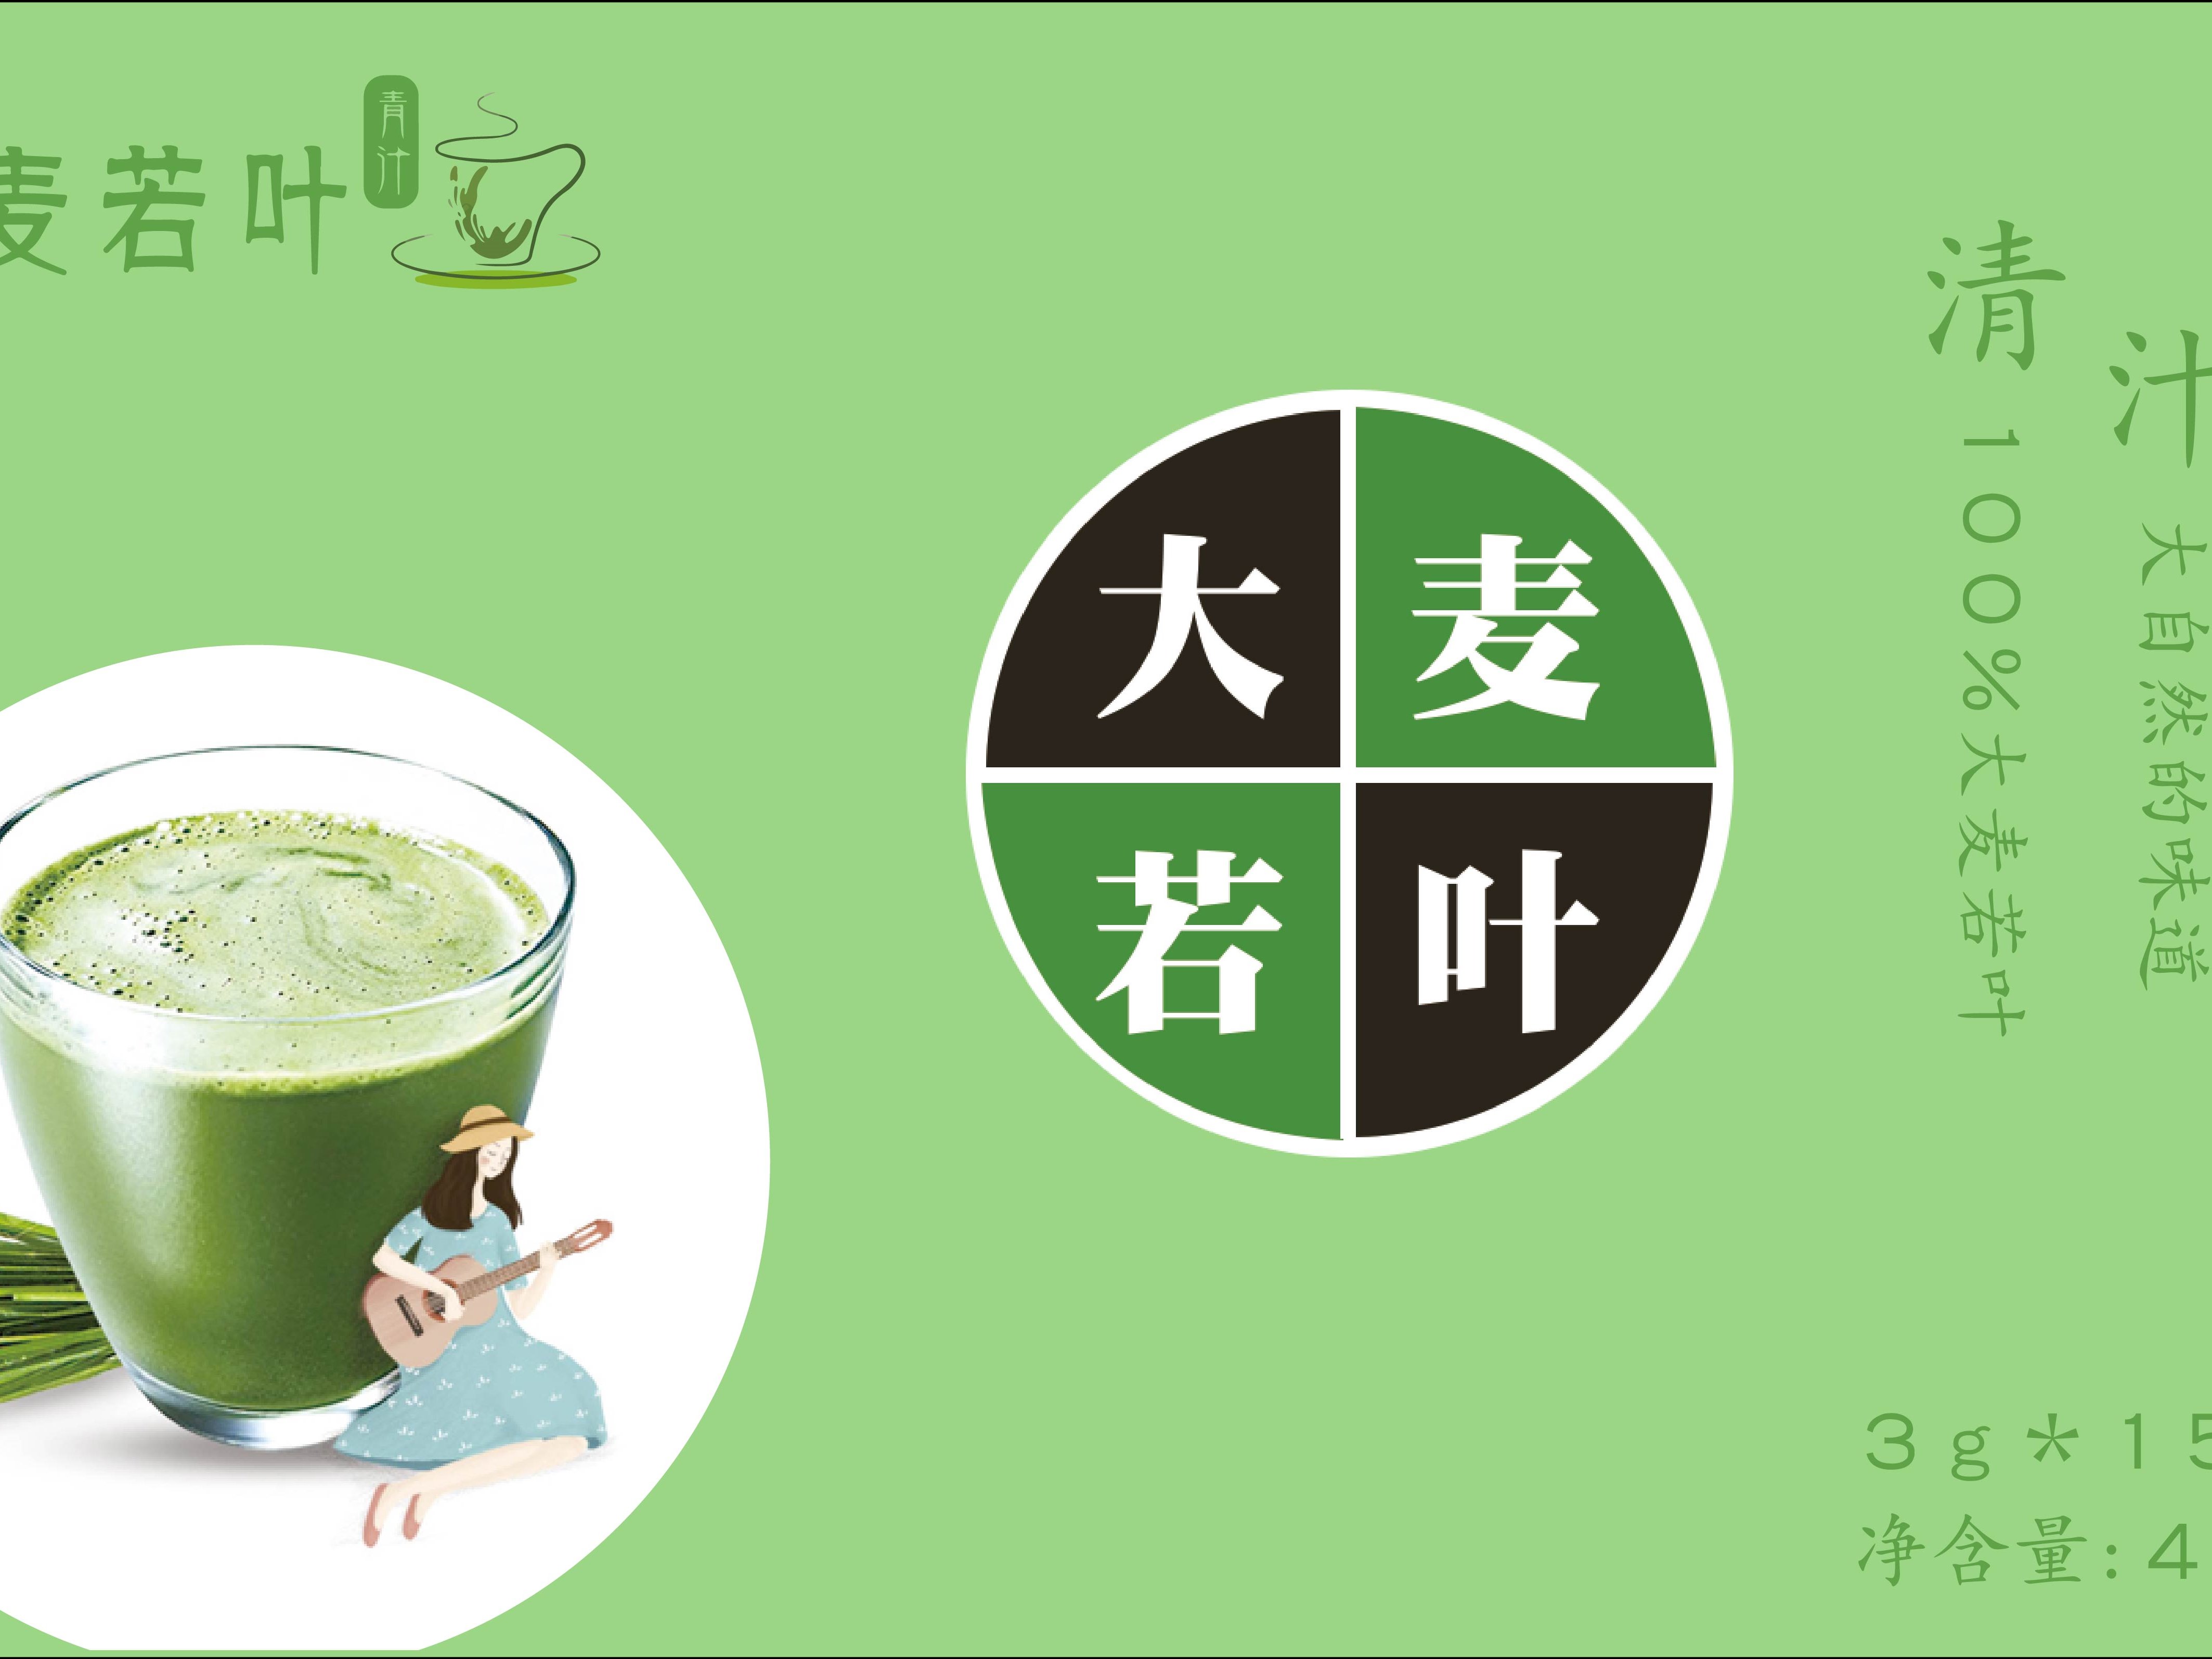 碗装大麦若叶酸奶 - 大麦若叶 | 山本汉方制药(日本)股份公司